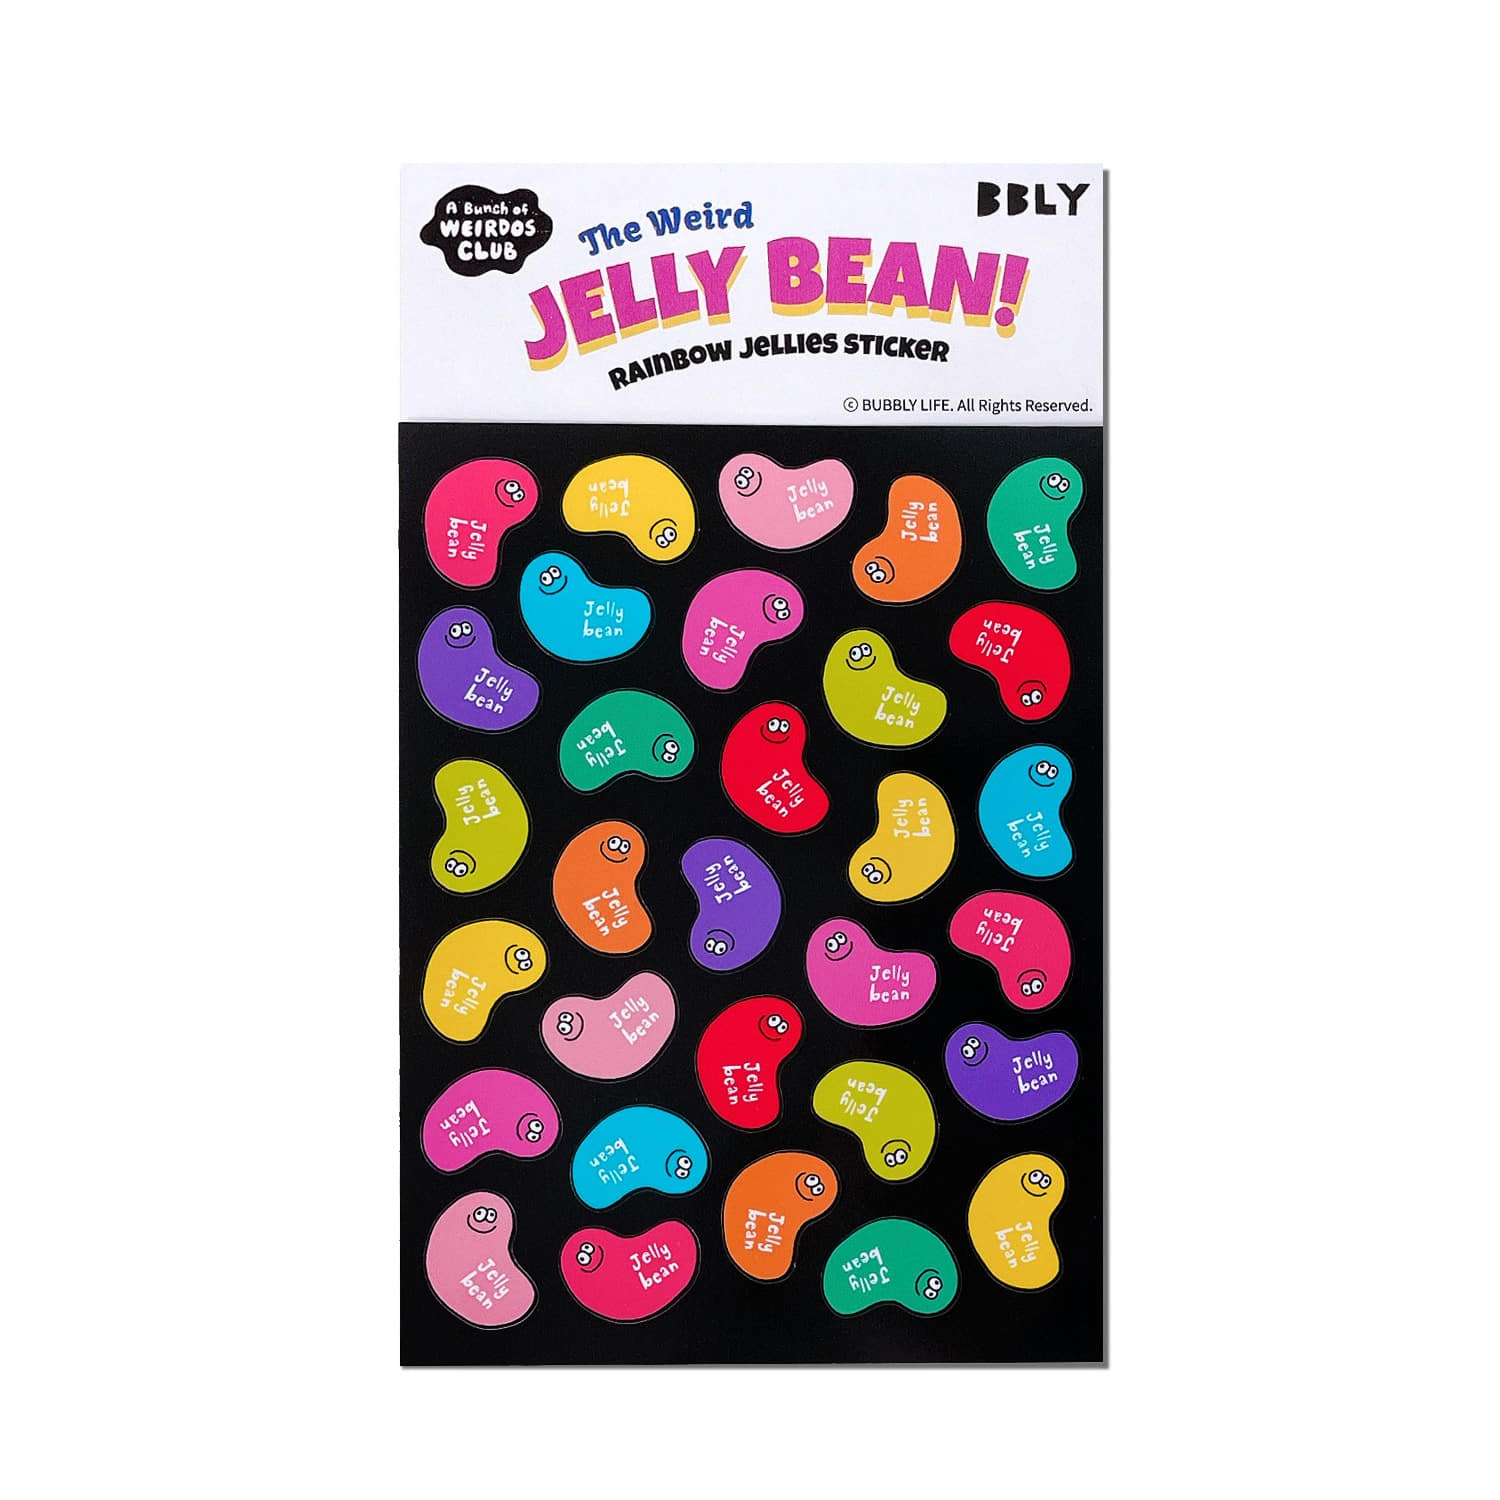 Rainbow Jelly bean 리무버블 스티커